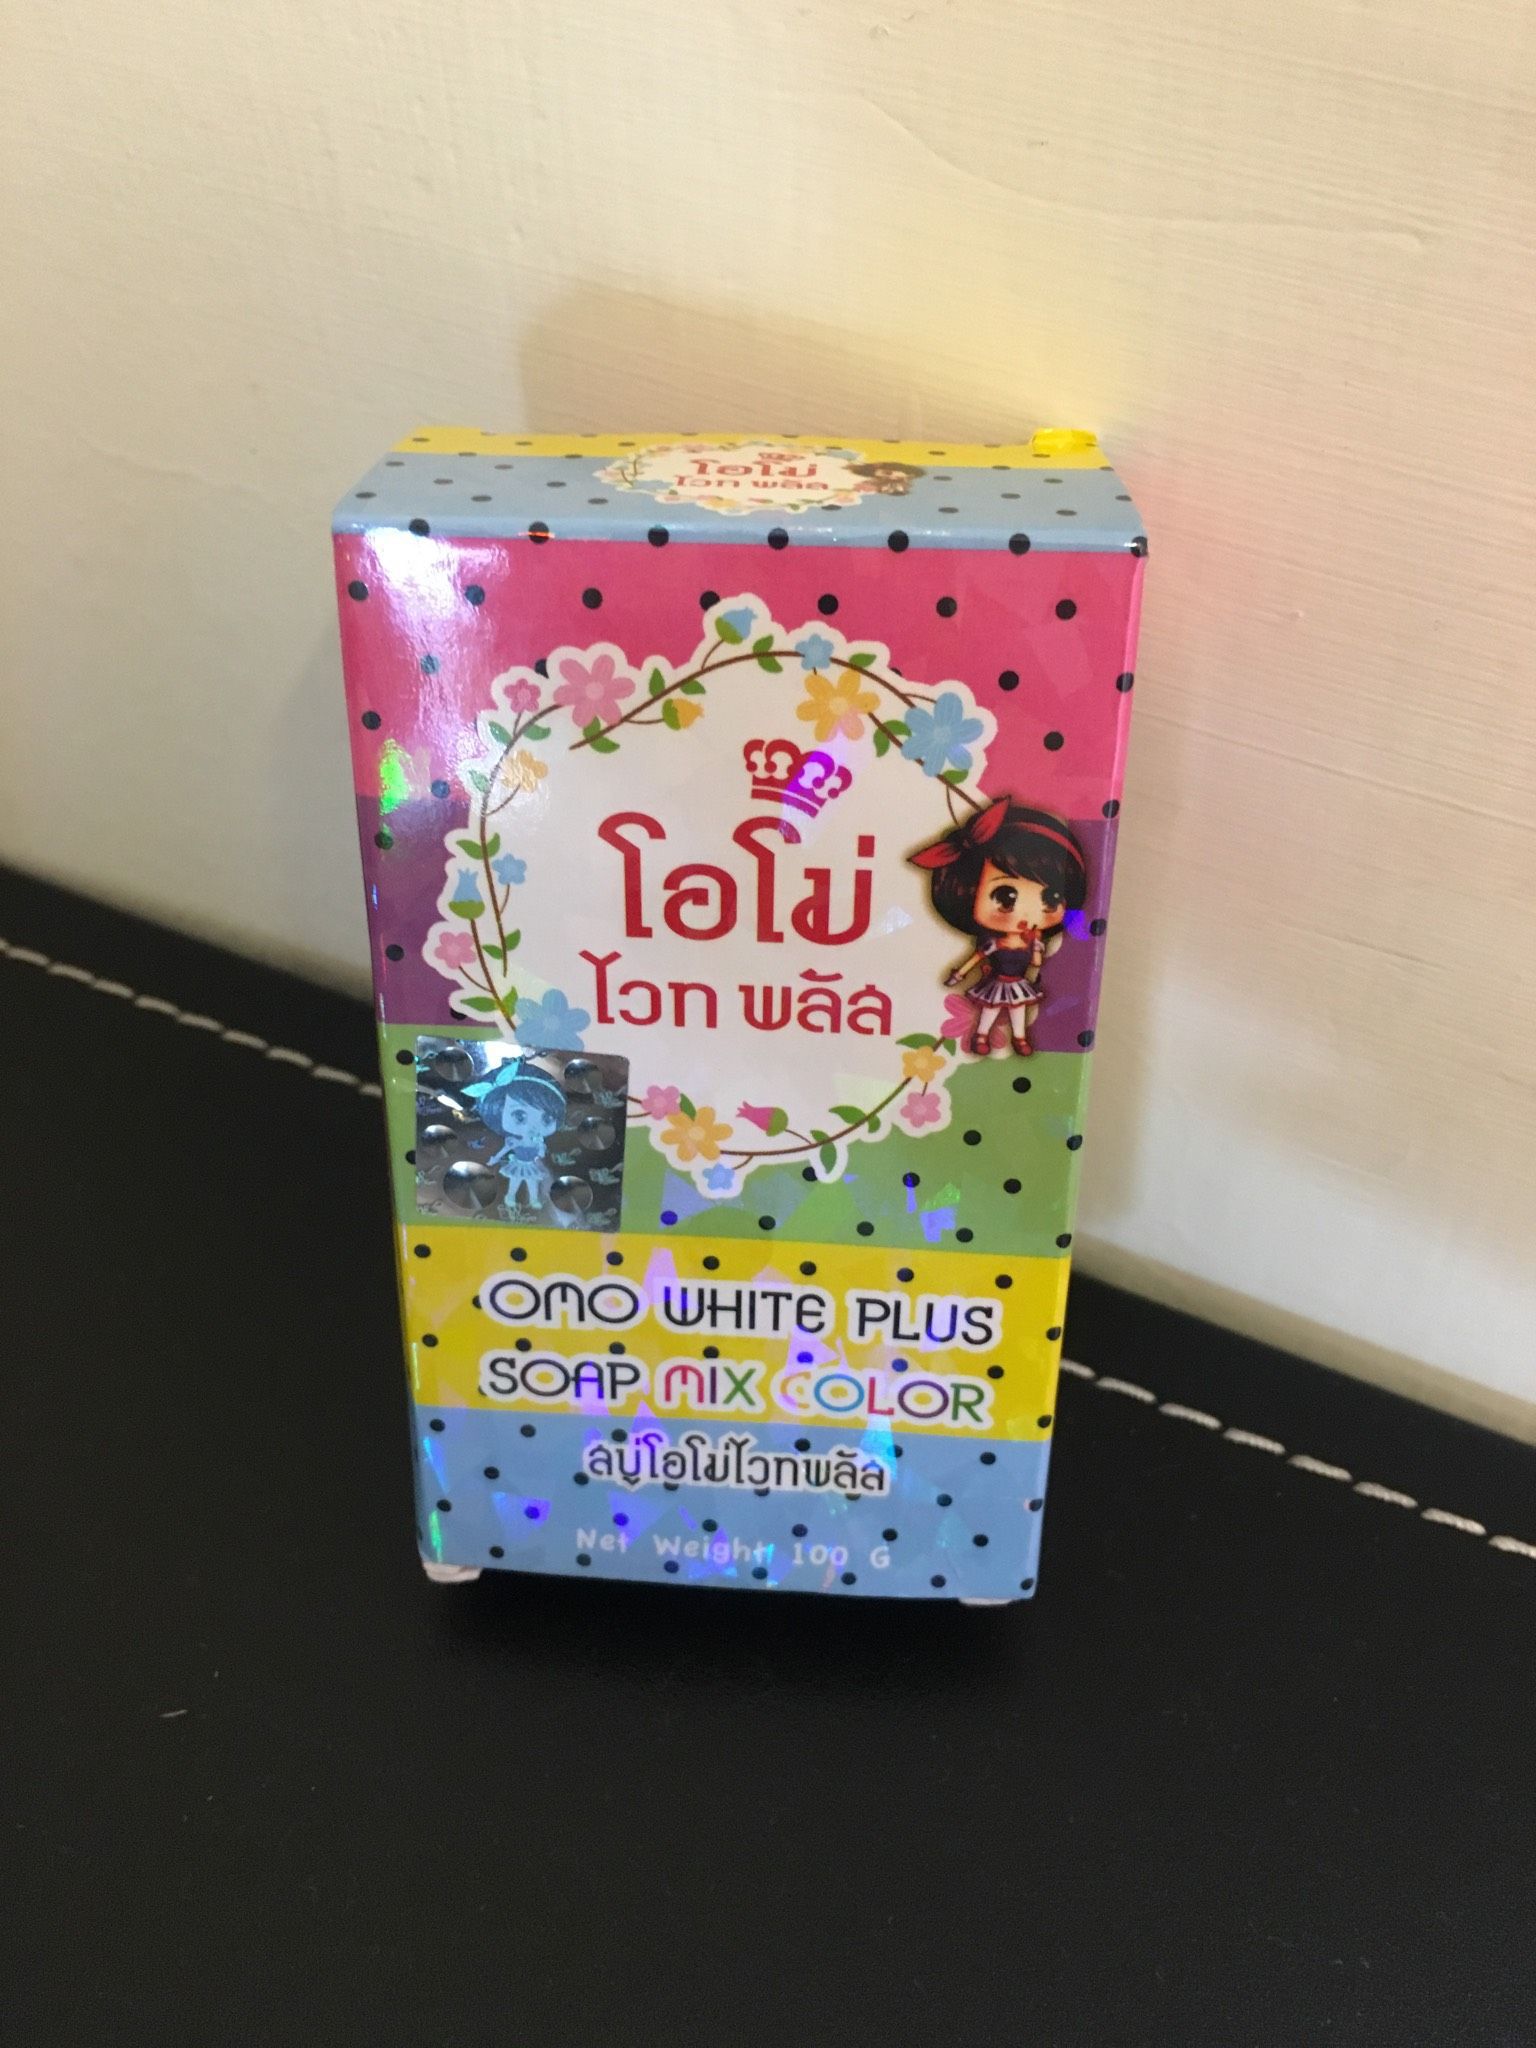 售泰國彩虹皂